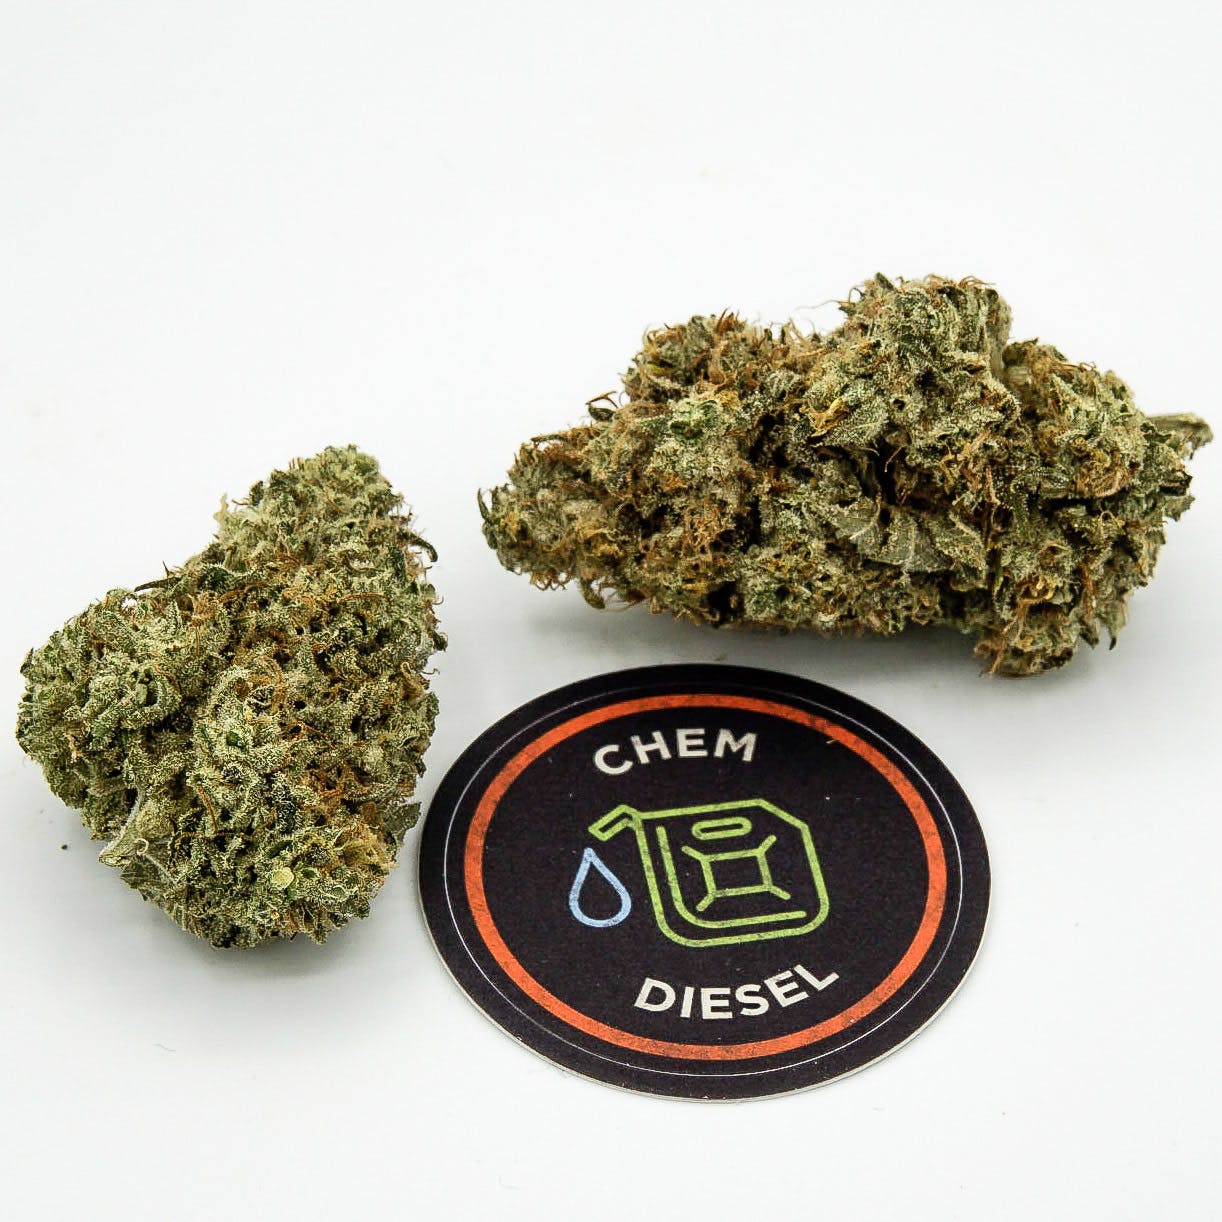 hybrid-chem-diesel-by-jar-cannabis-co